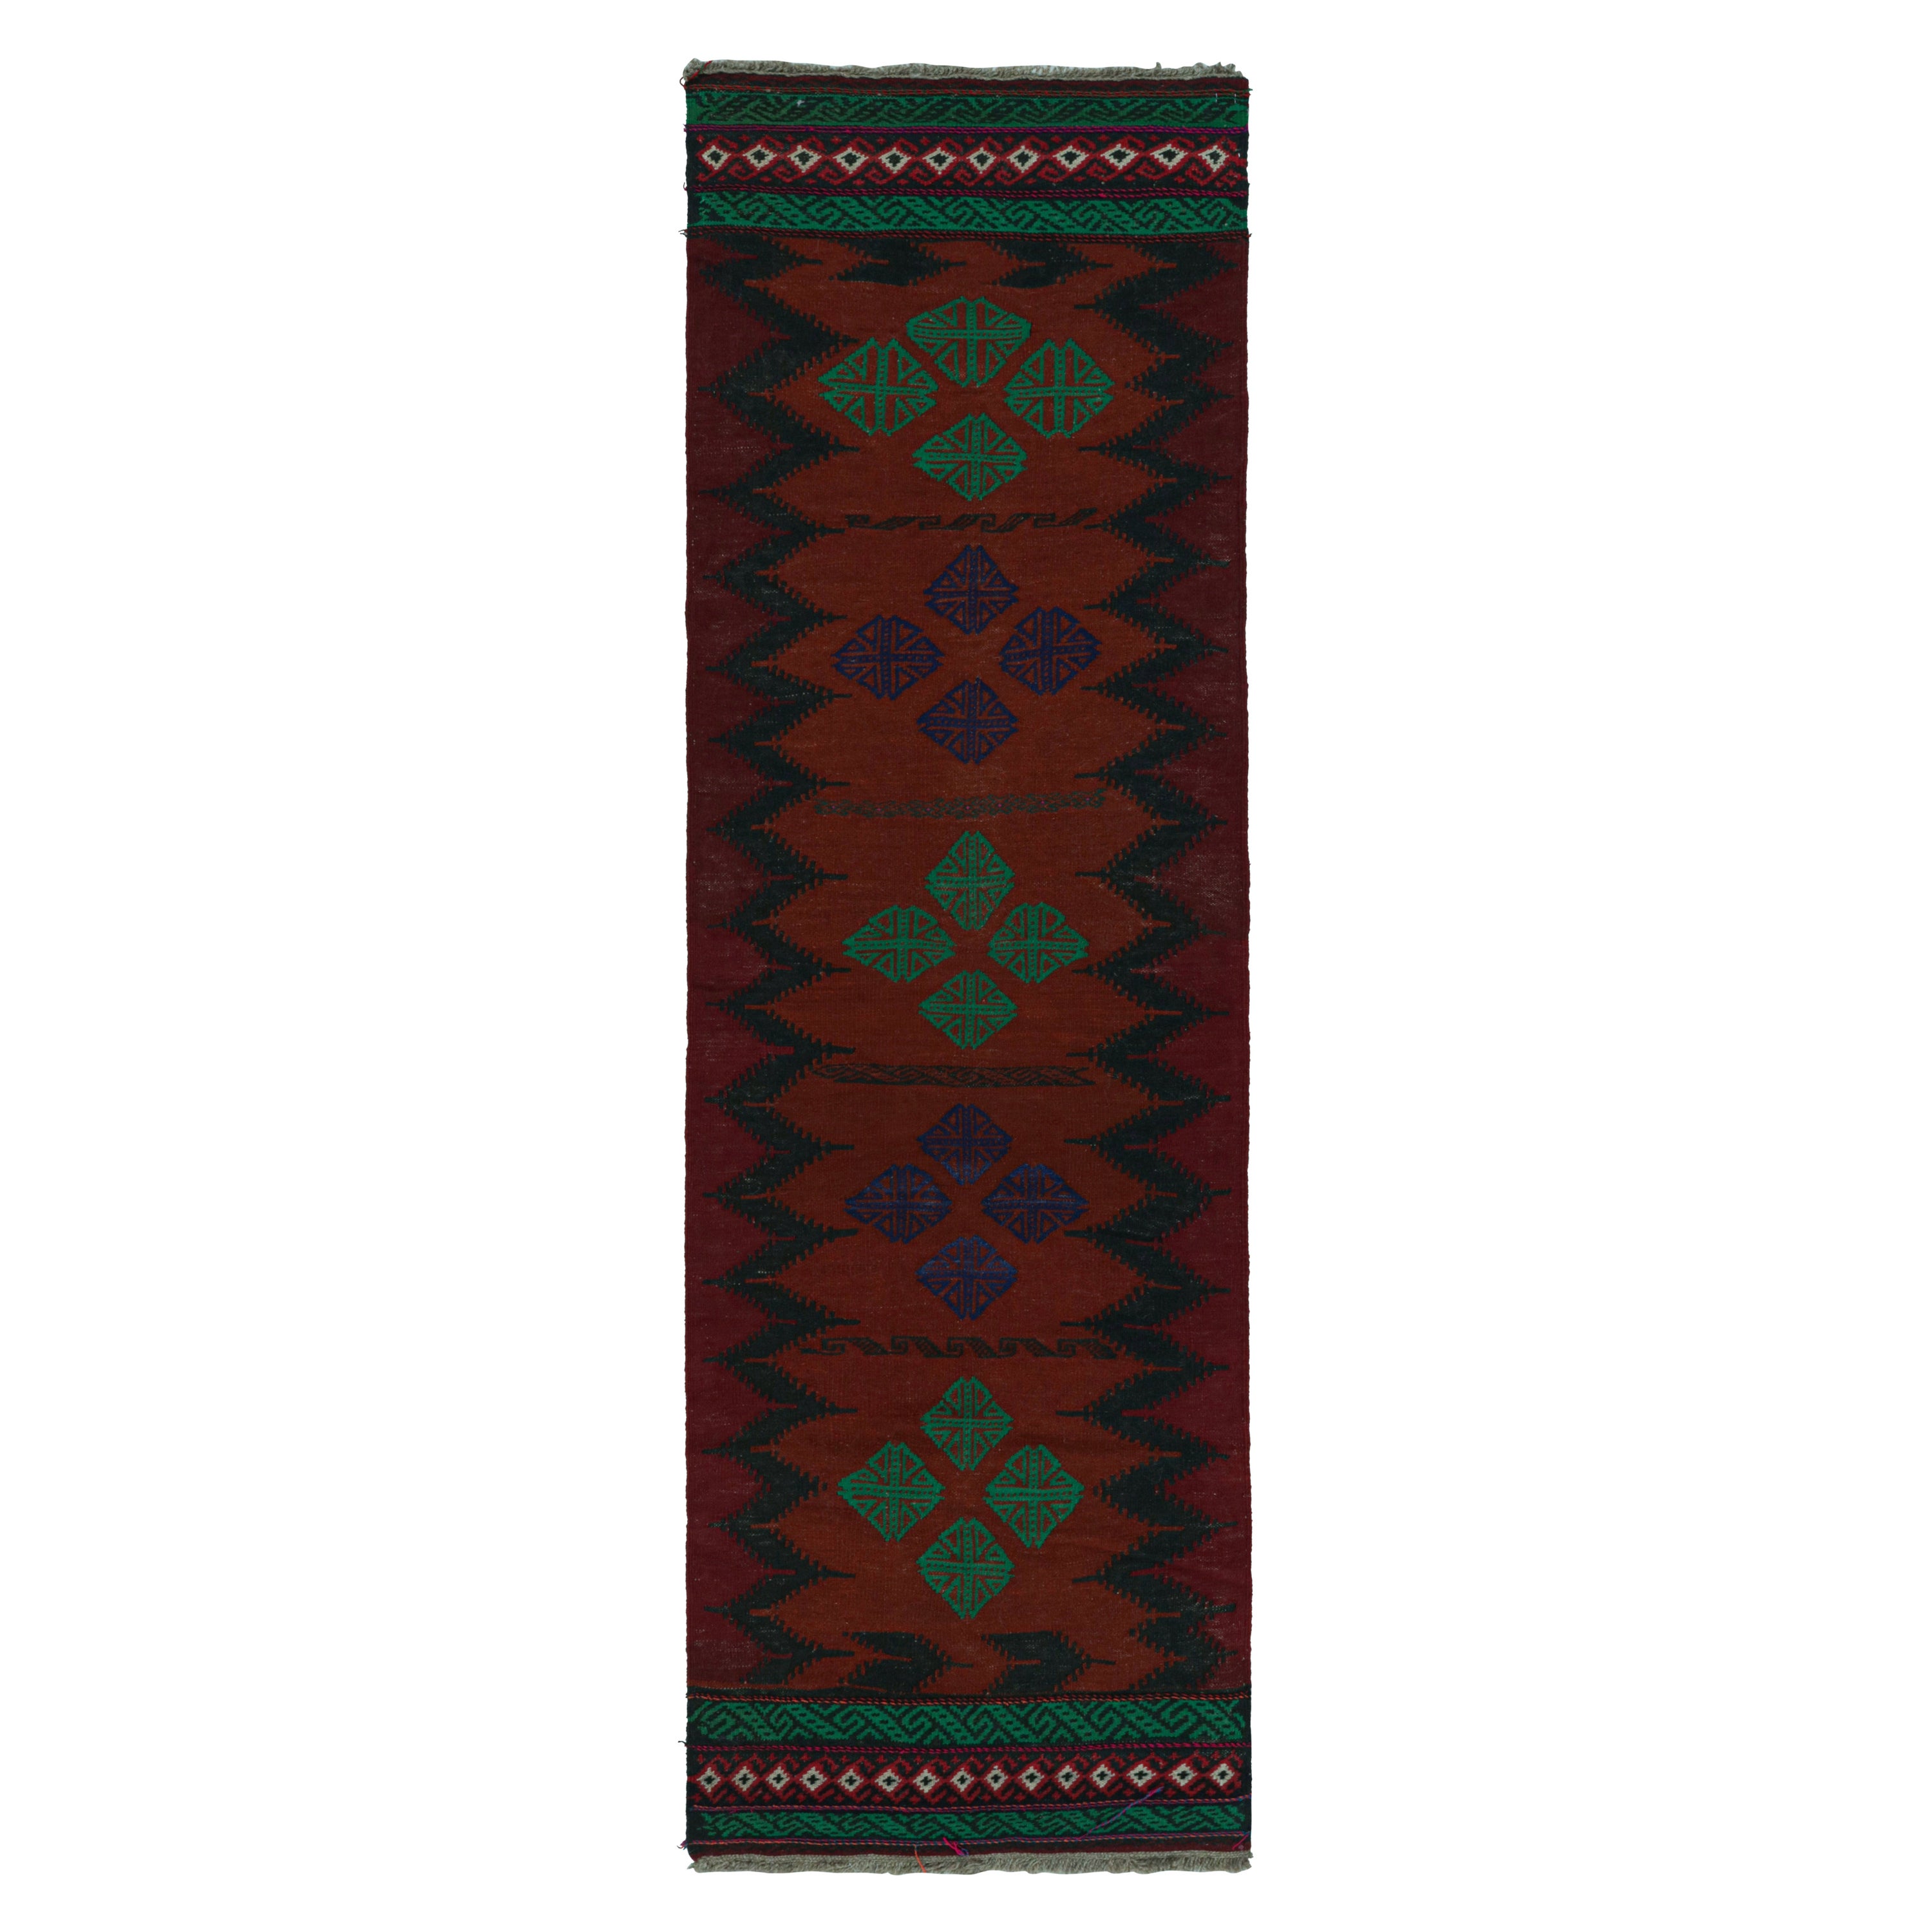 Vintage Afghan Tribal Kilim in Rust Tones Geometric Patterns, from Rug & Kilim